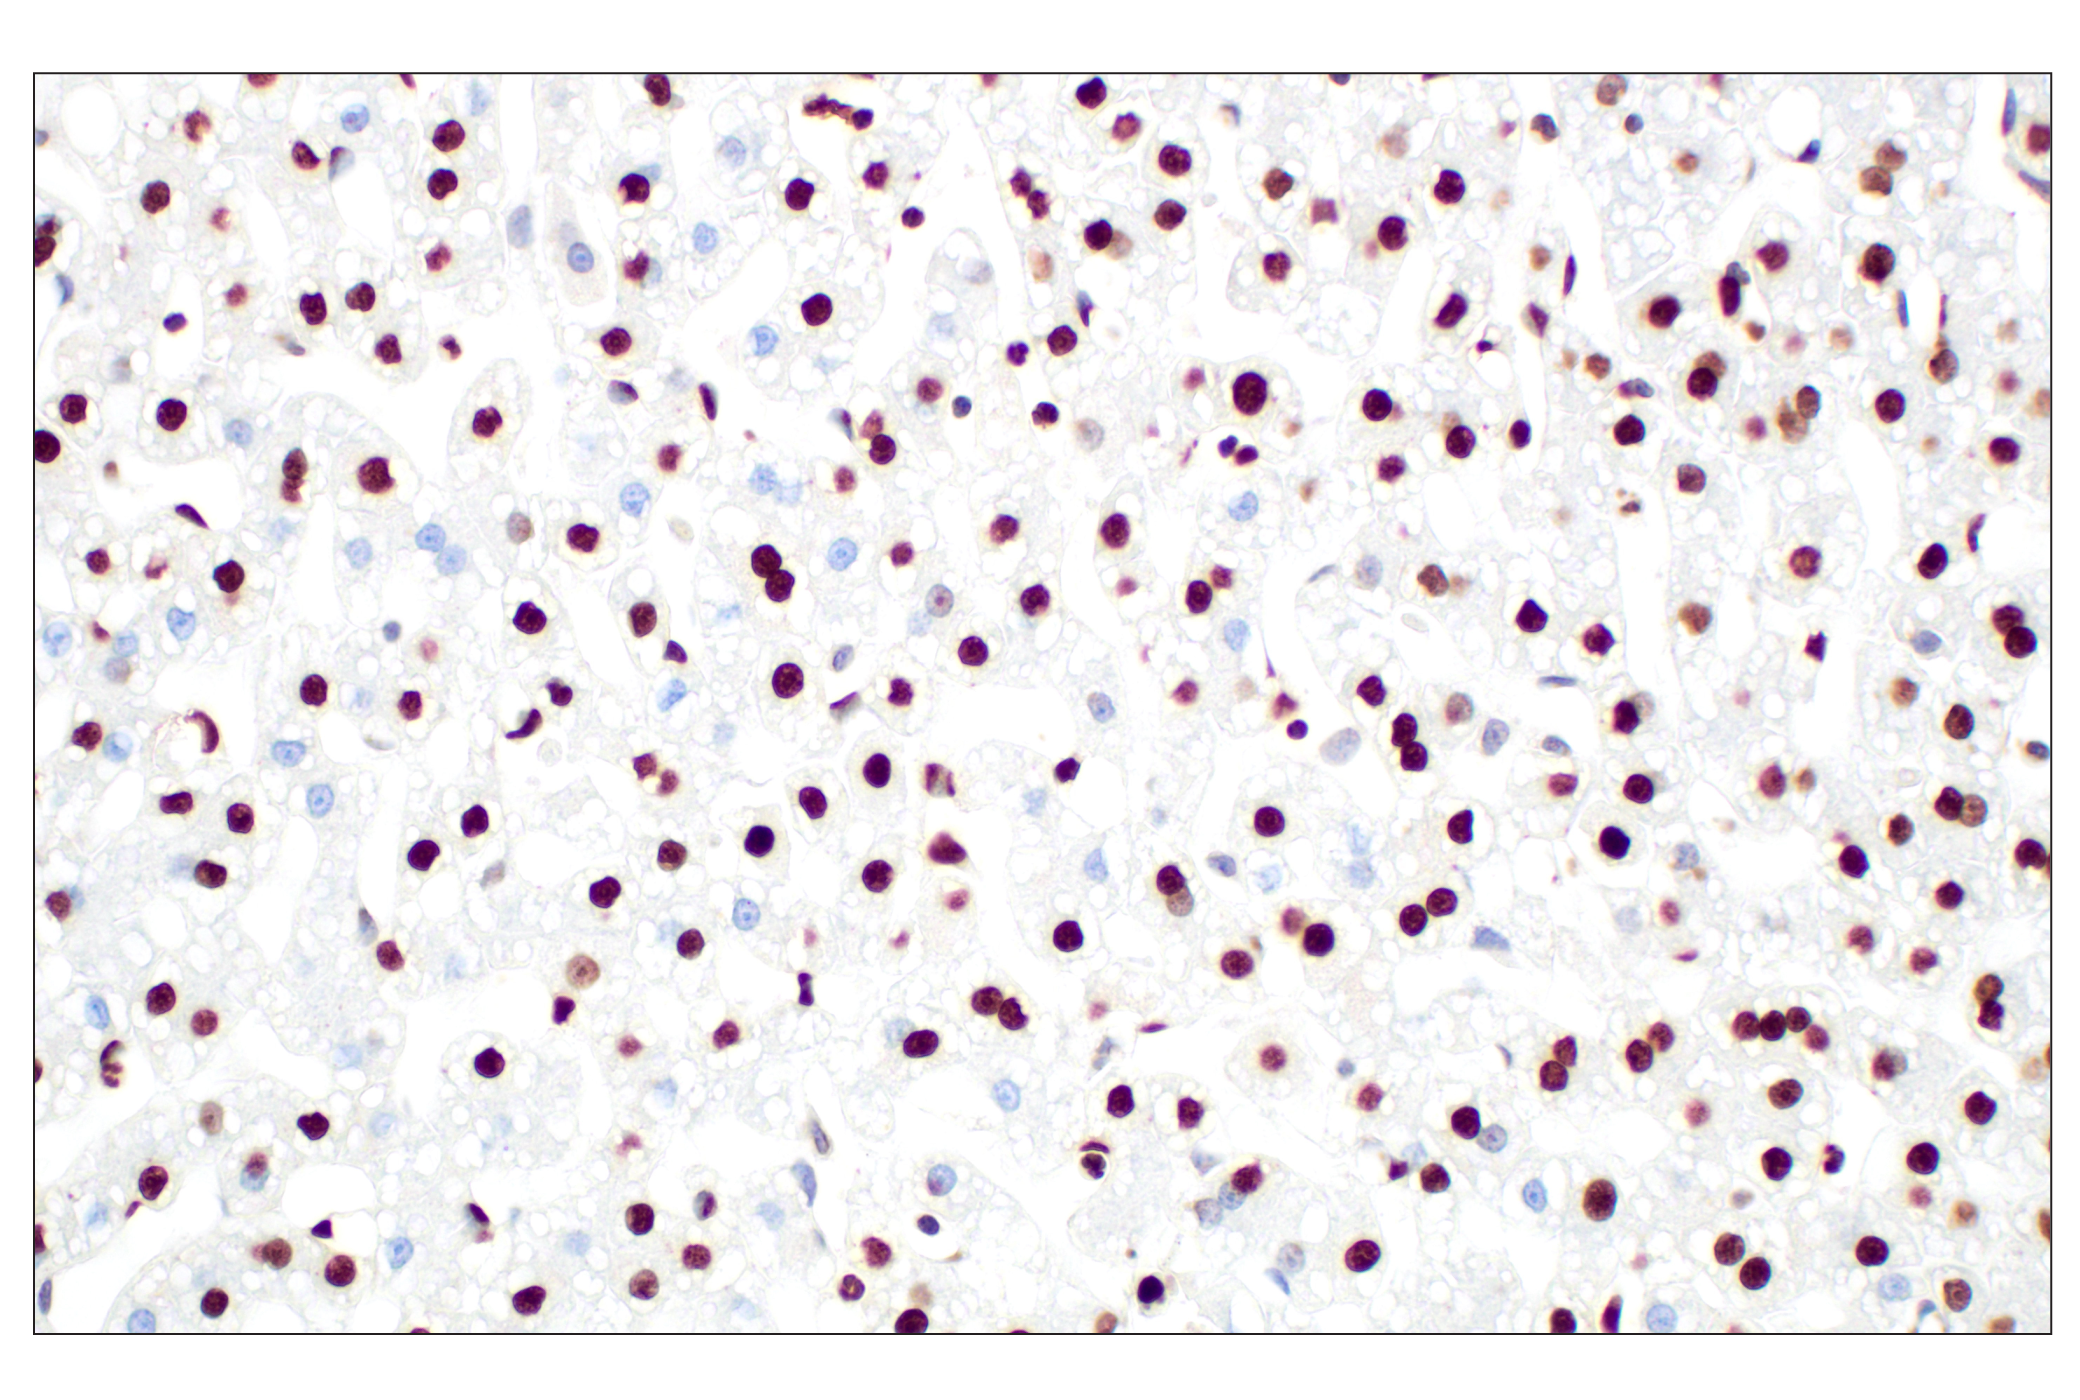  Image 24: Methyl-Histone H3 (Lys9) Antibody Sampler Kit